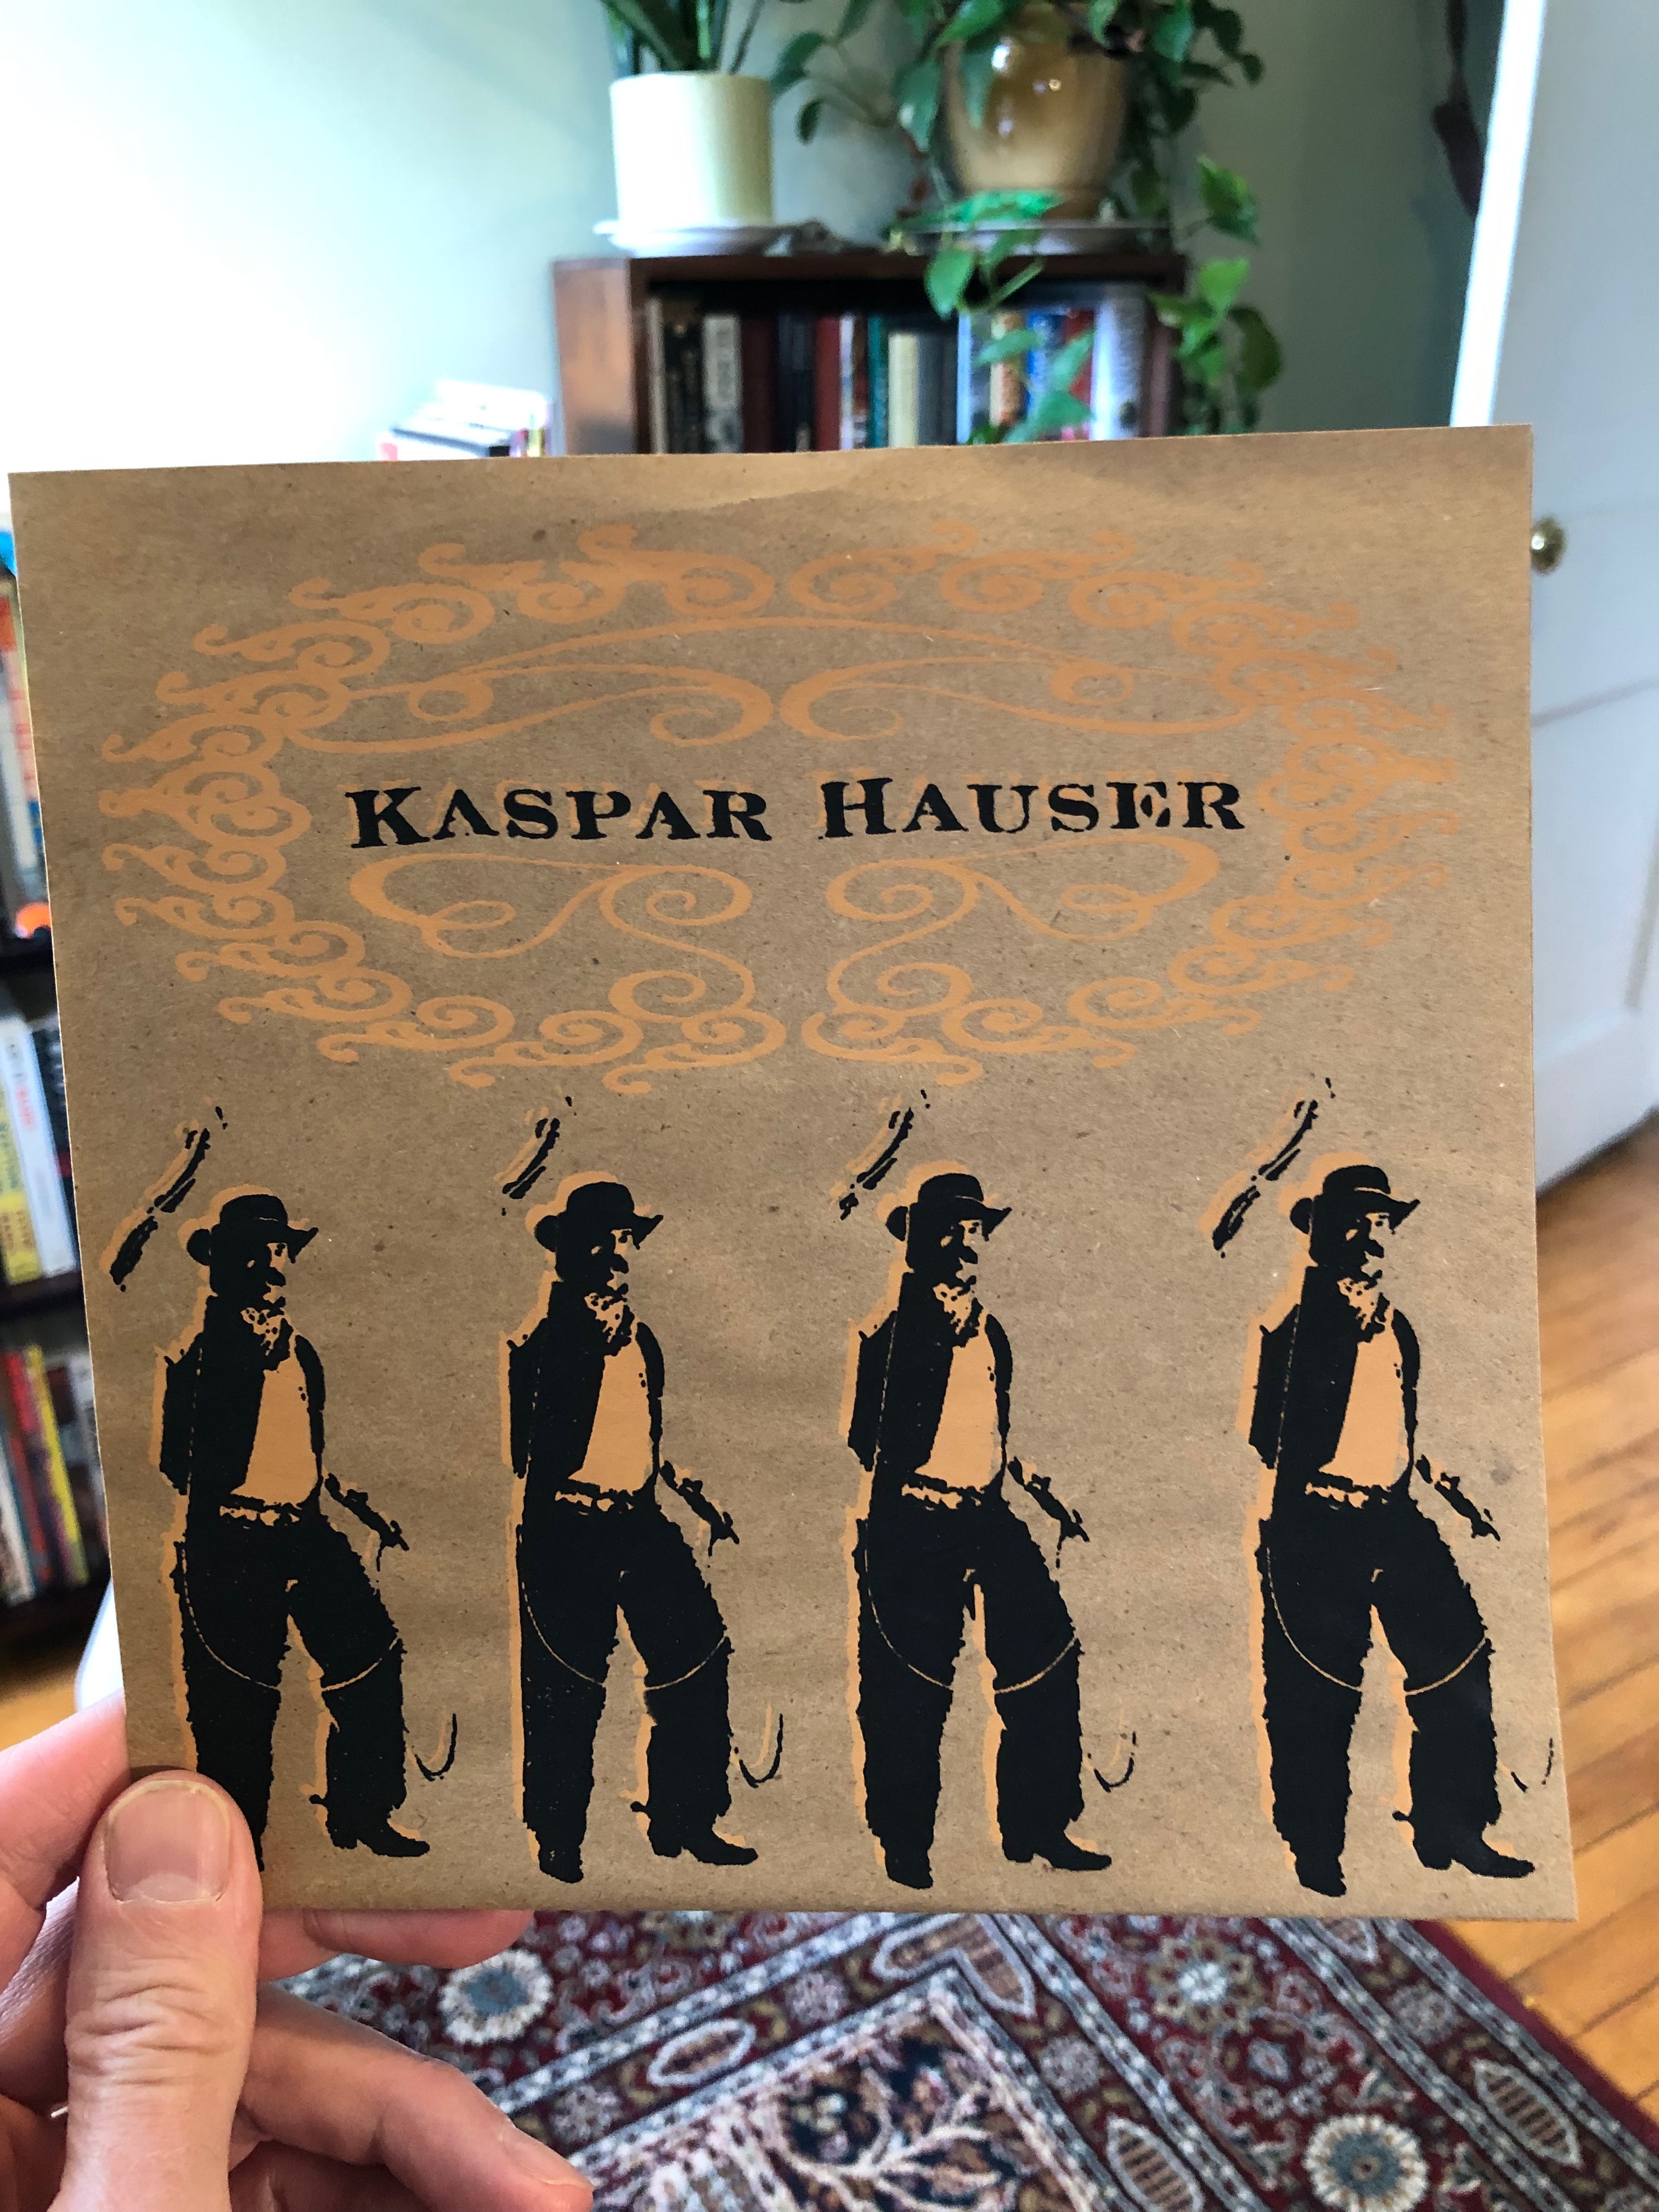 Kaspar Hauser 7-inch